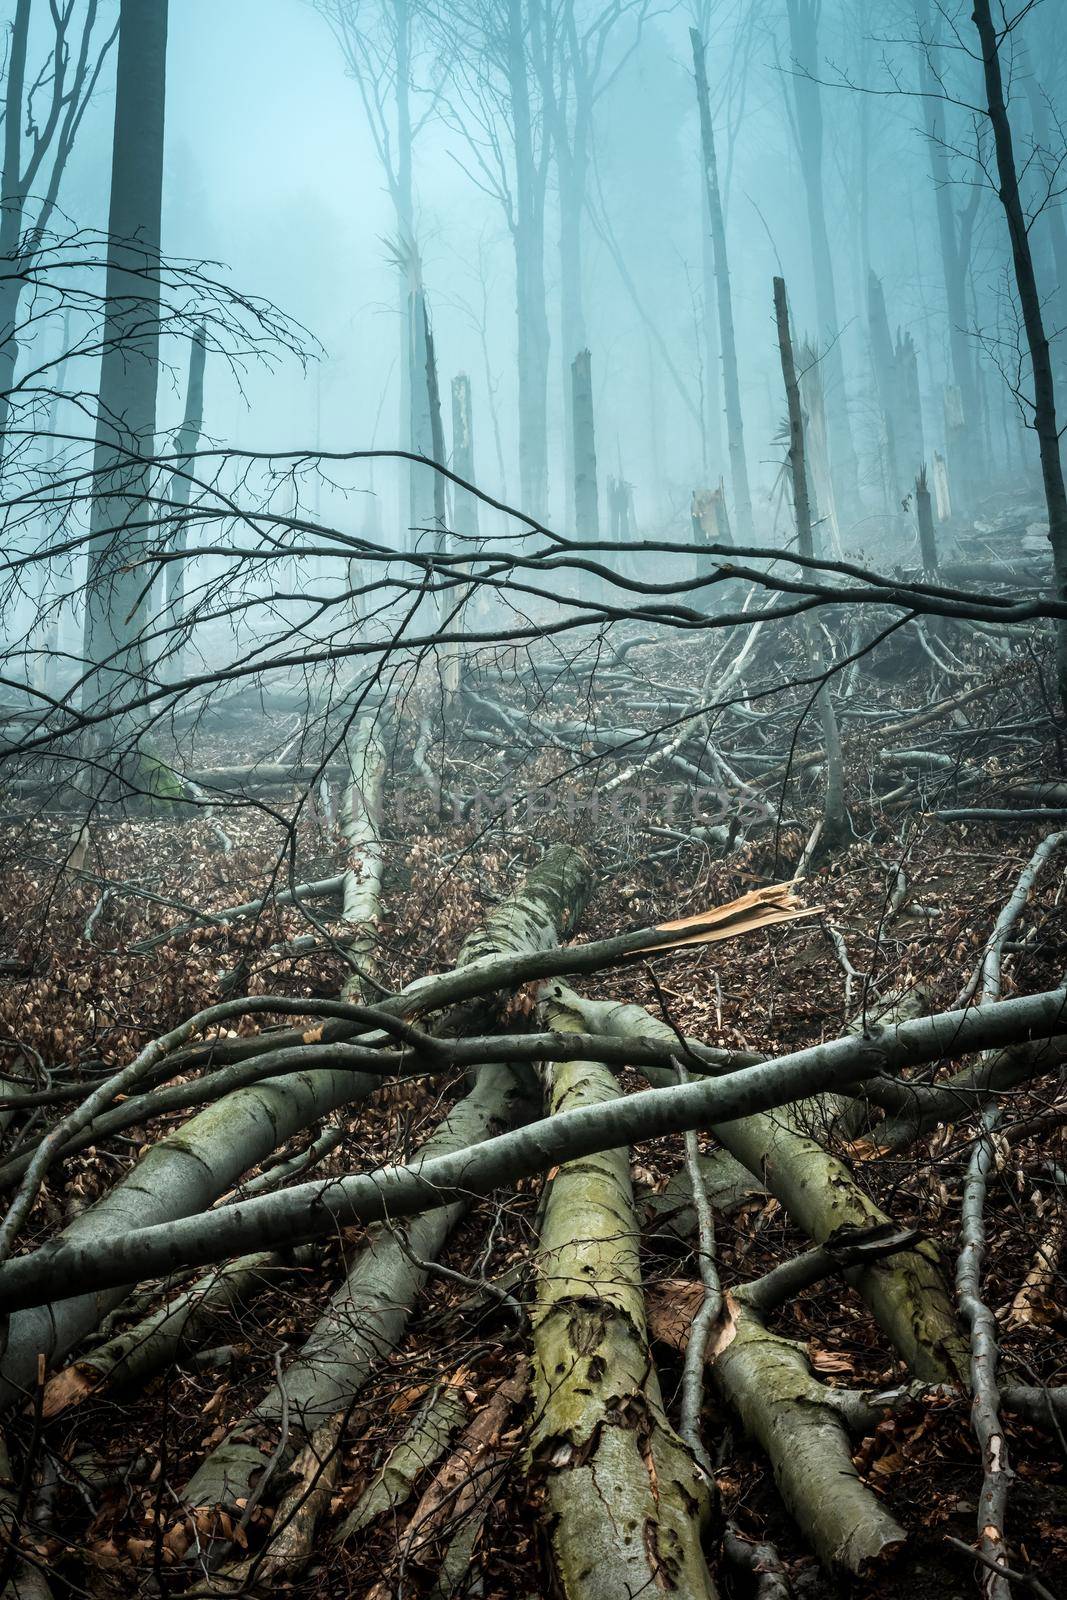 fallen by storm trees in forest by GekaSkr